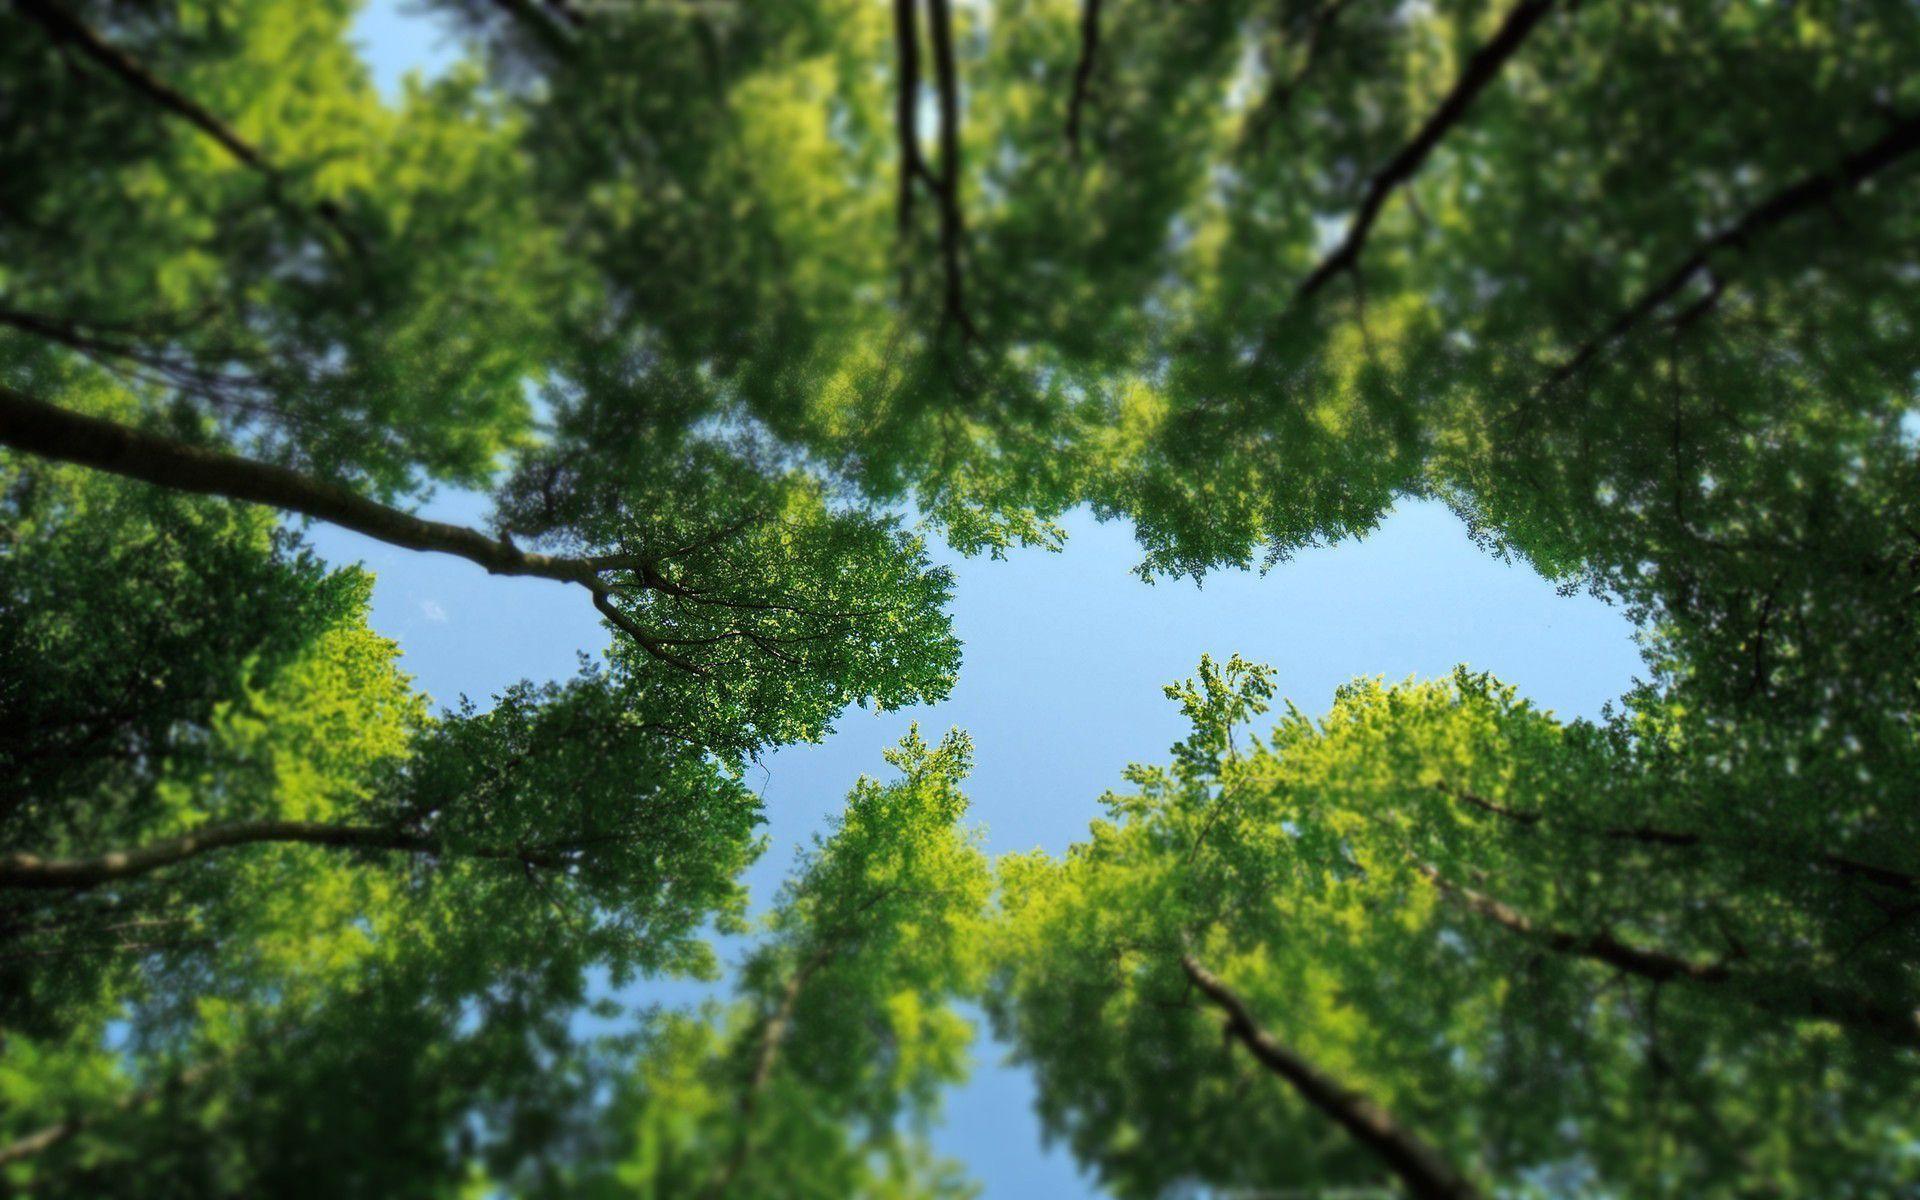 Trang trí màn hình máy tính của bạn bằng những hình nền cây cực phong phú tại đây. Hình ảnh cây rừng tươi tốt trong không gian xanh mướt, cho bạn cảm giác rất hòa mình vào thiên nhiên. Trải nghiệm màn hình máy tính tươi sáng, sảng khoái hơn cùng với hình nền cây xanh tươi.